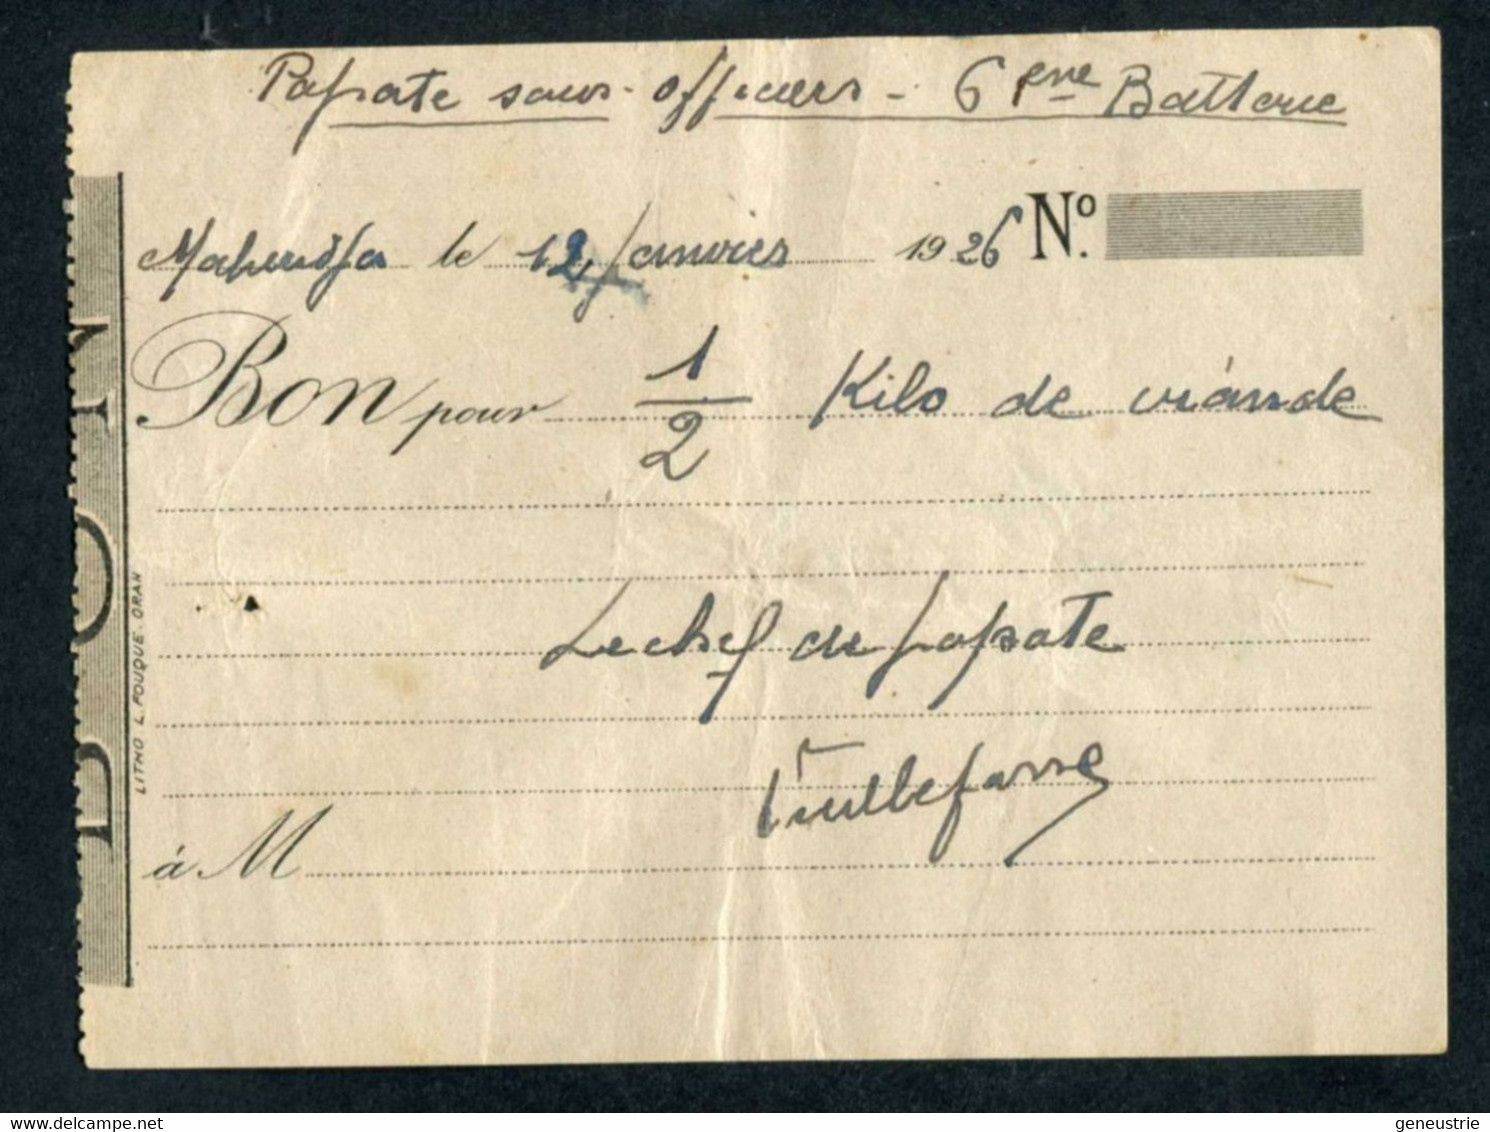 Jeton Monnaie Papier Coloniale 1926 - Camp De Mahiridja Au Maroc "Bon Pour 1/2 Kilo De Viande / Popote Sous-officiers" - Monétaires / De Nécessité